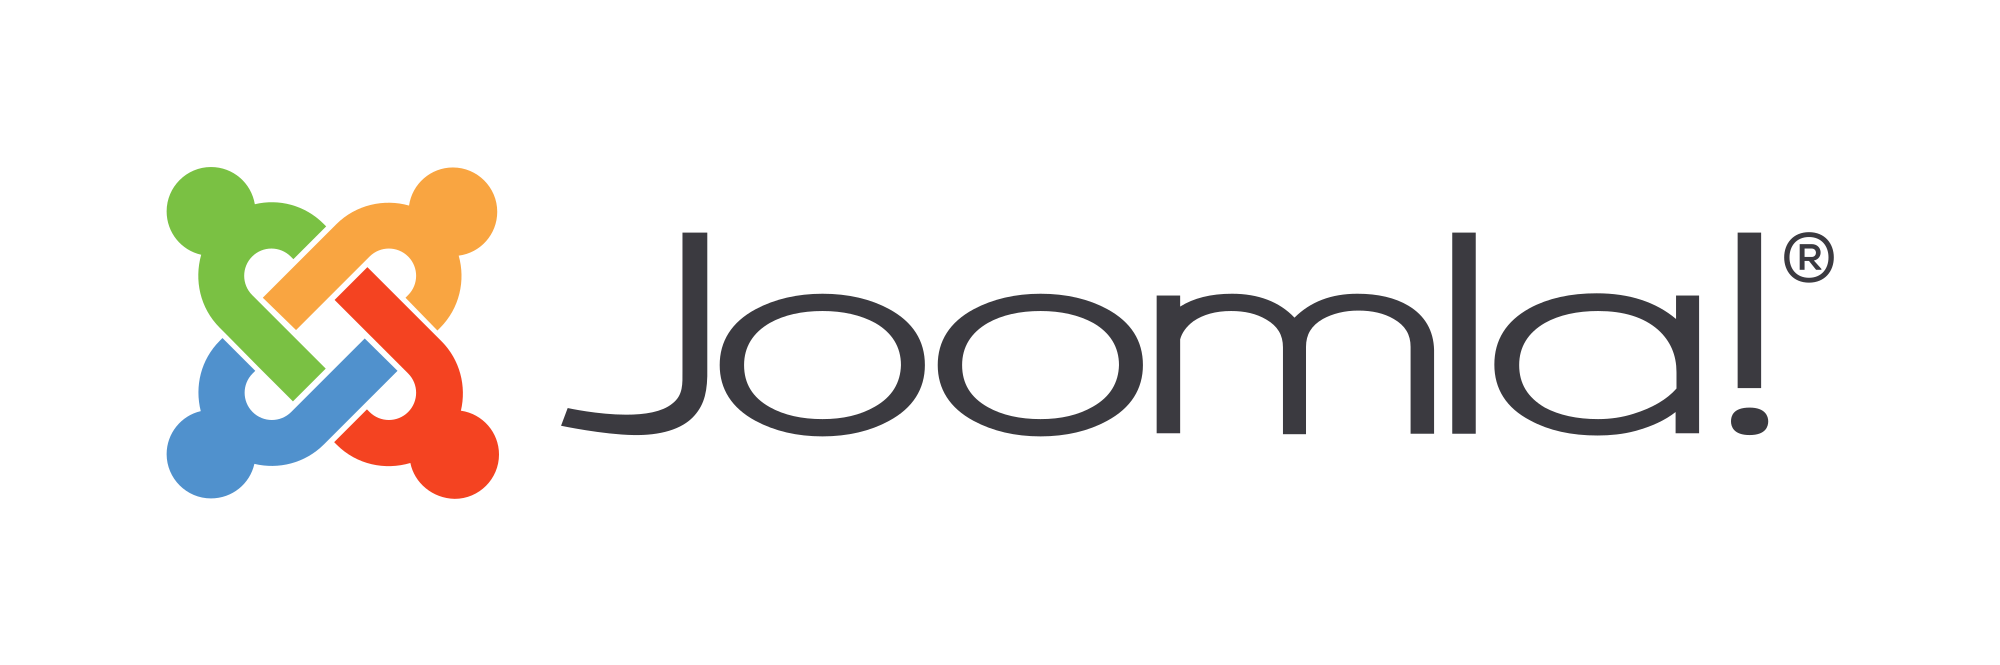  Joomla SSO Login | Joomla Integration | Joomla Extensions | Joomla SSO plugins 